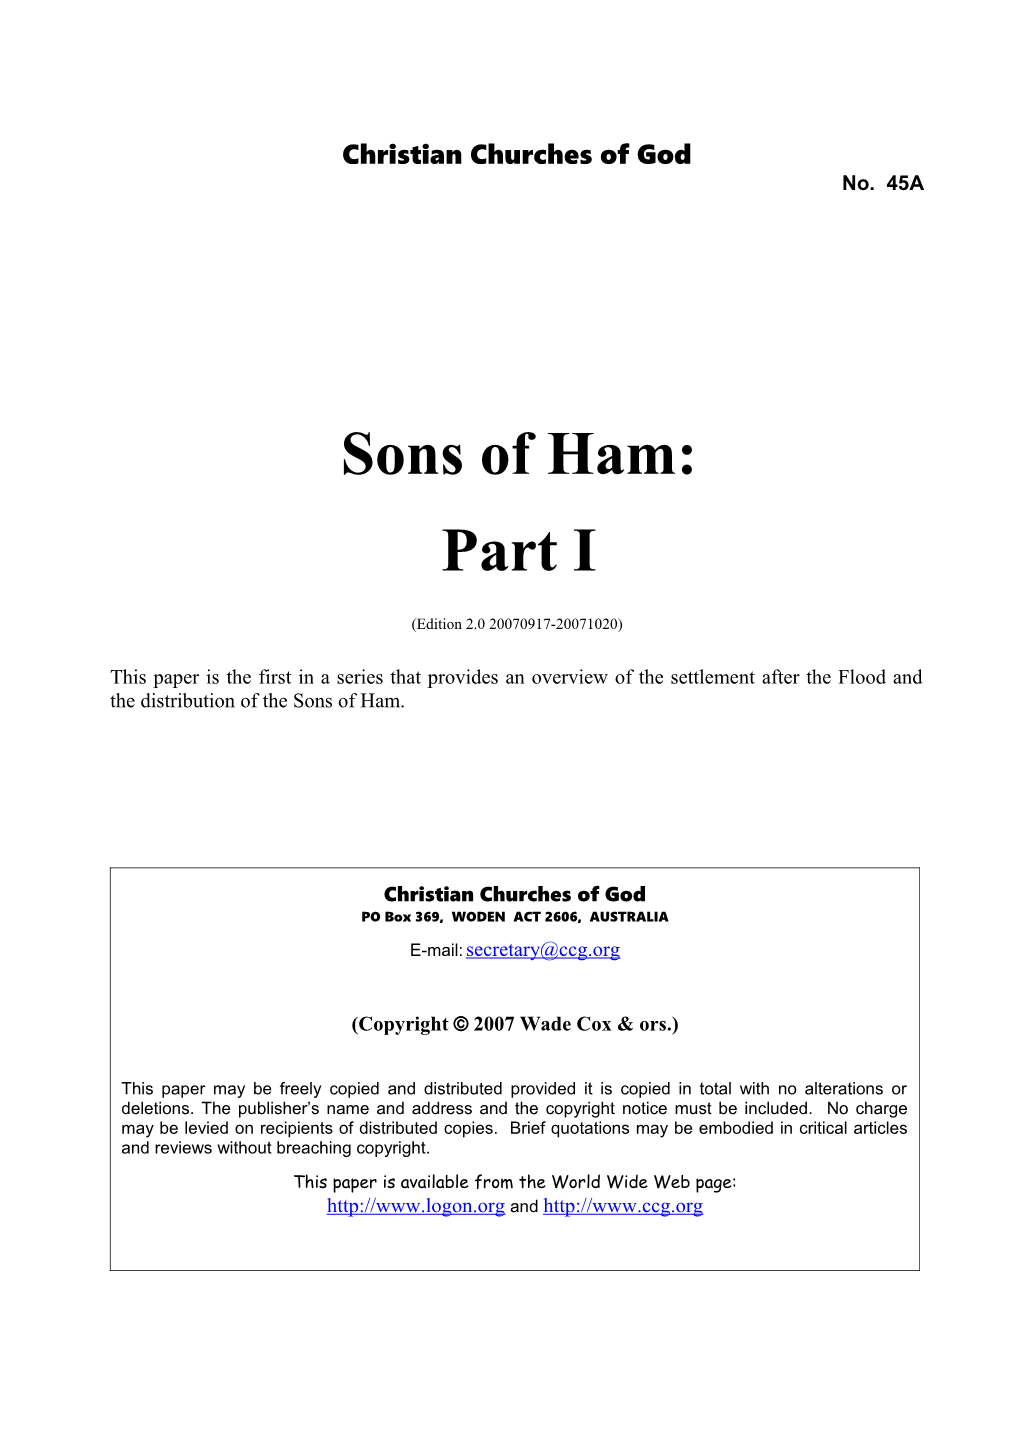 Sons of Ham: Part I (No. 45A)